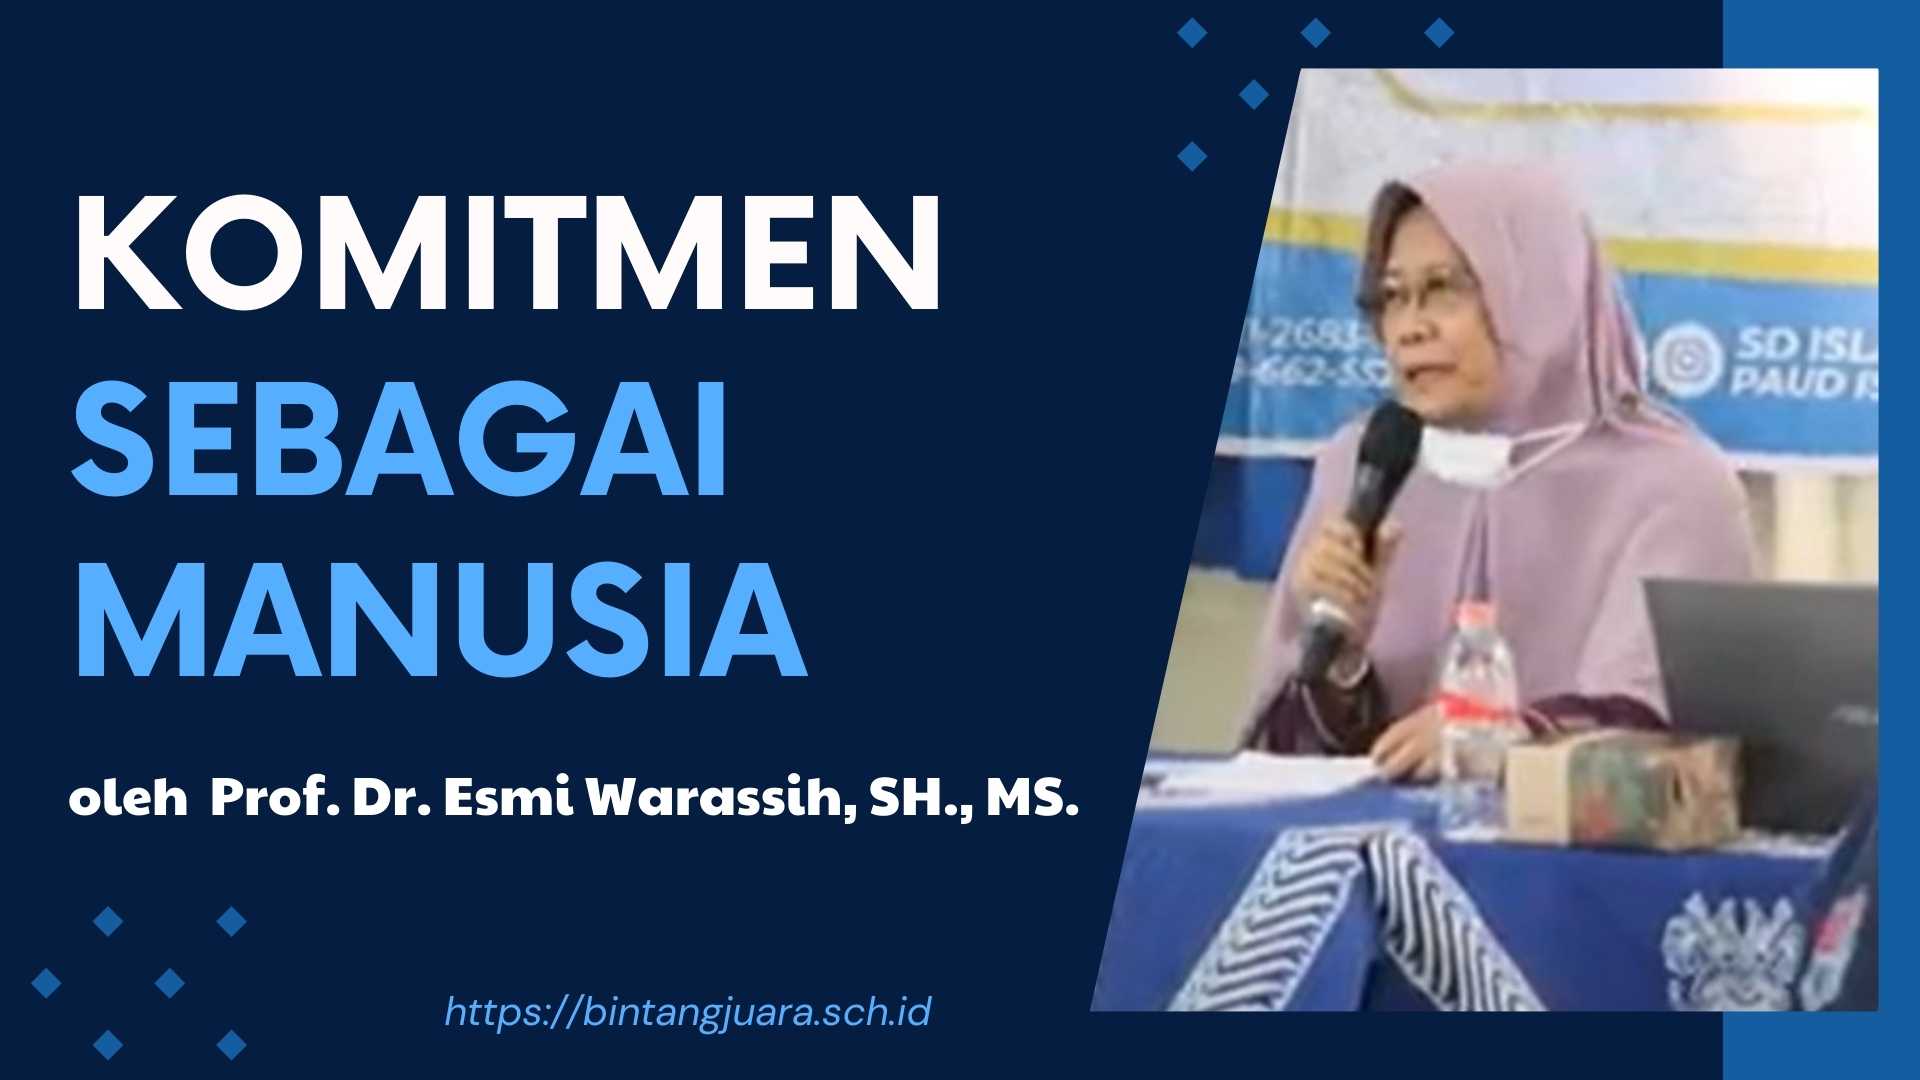 Prof. Dr. Esmi Warassih, SH., MS